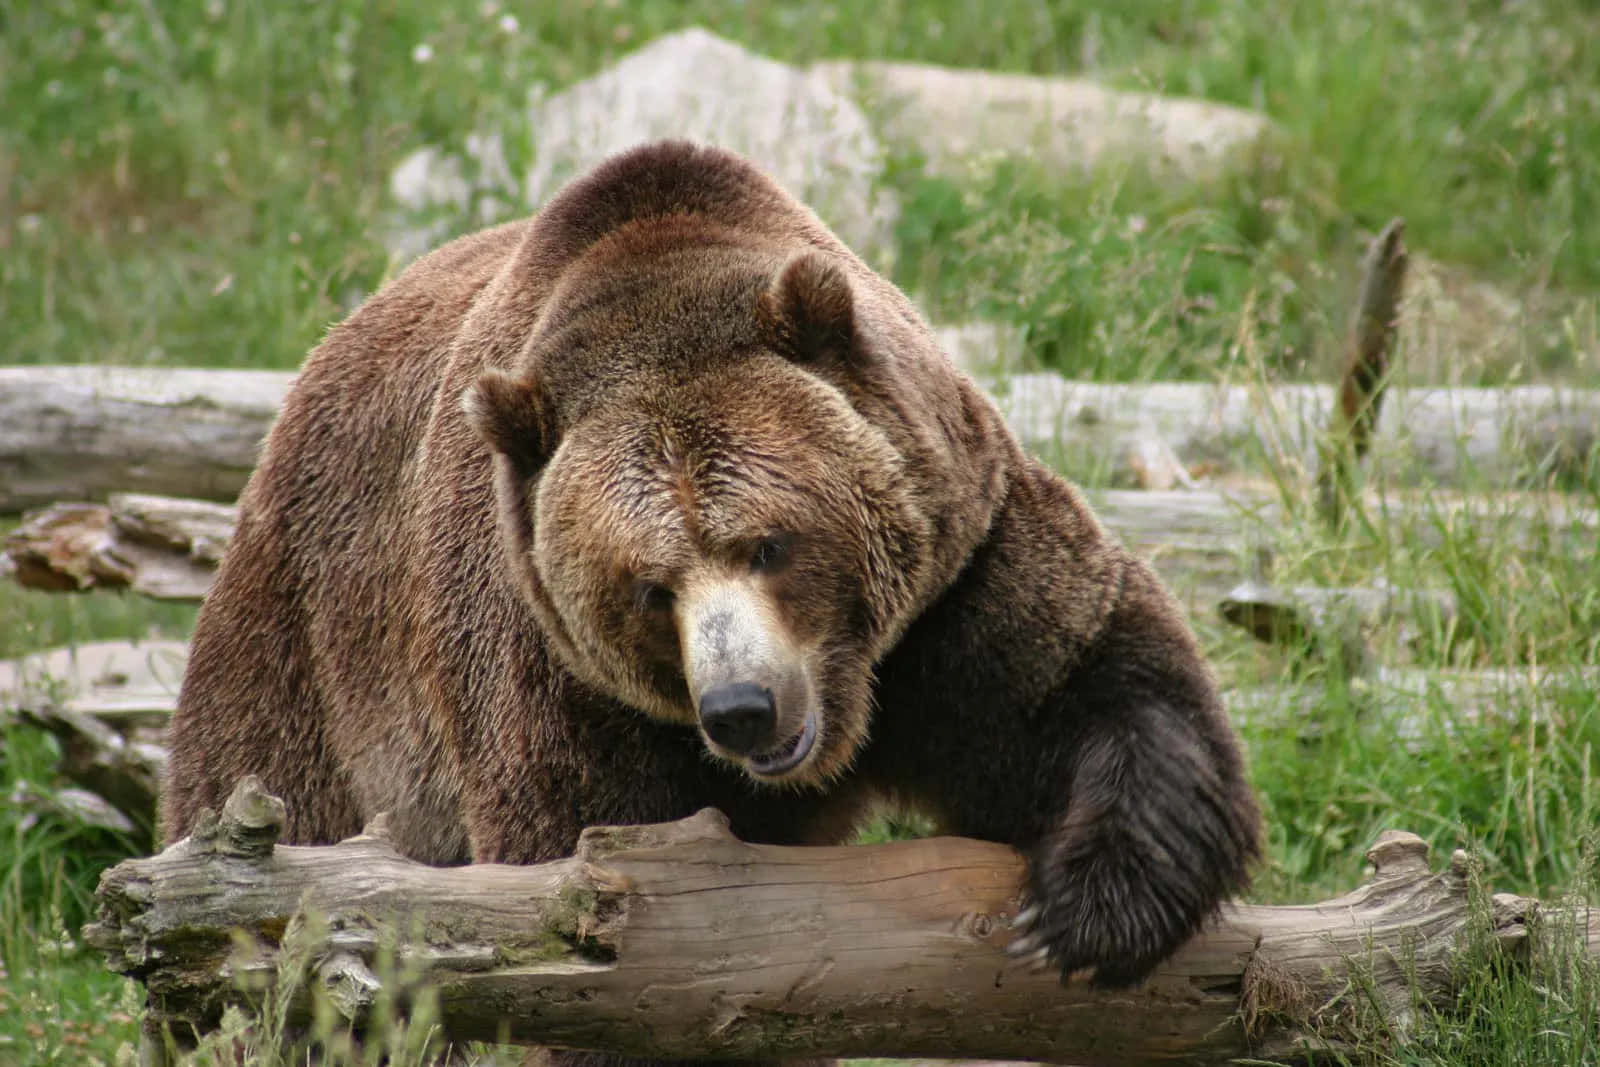 Unavista Affascinante Di Un Potente Orso Grizzly Nel Suo Habitat Naturale